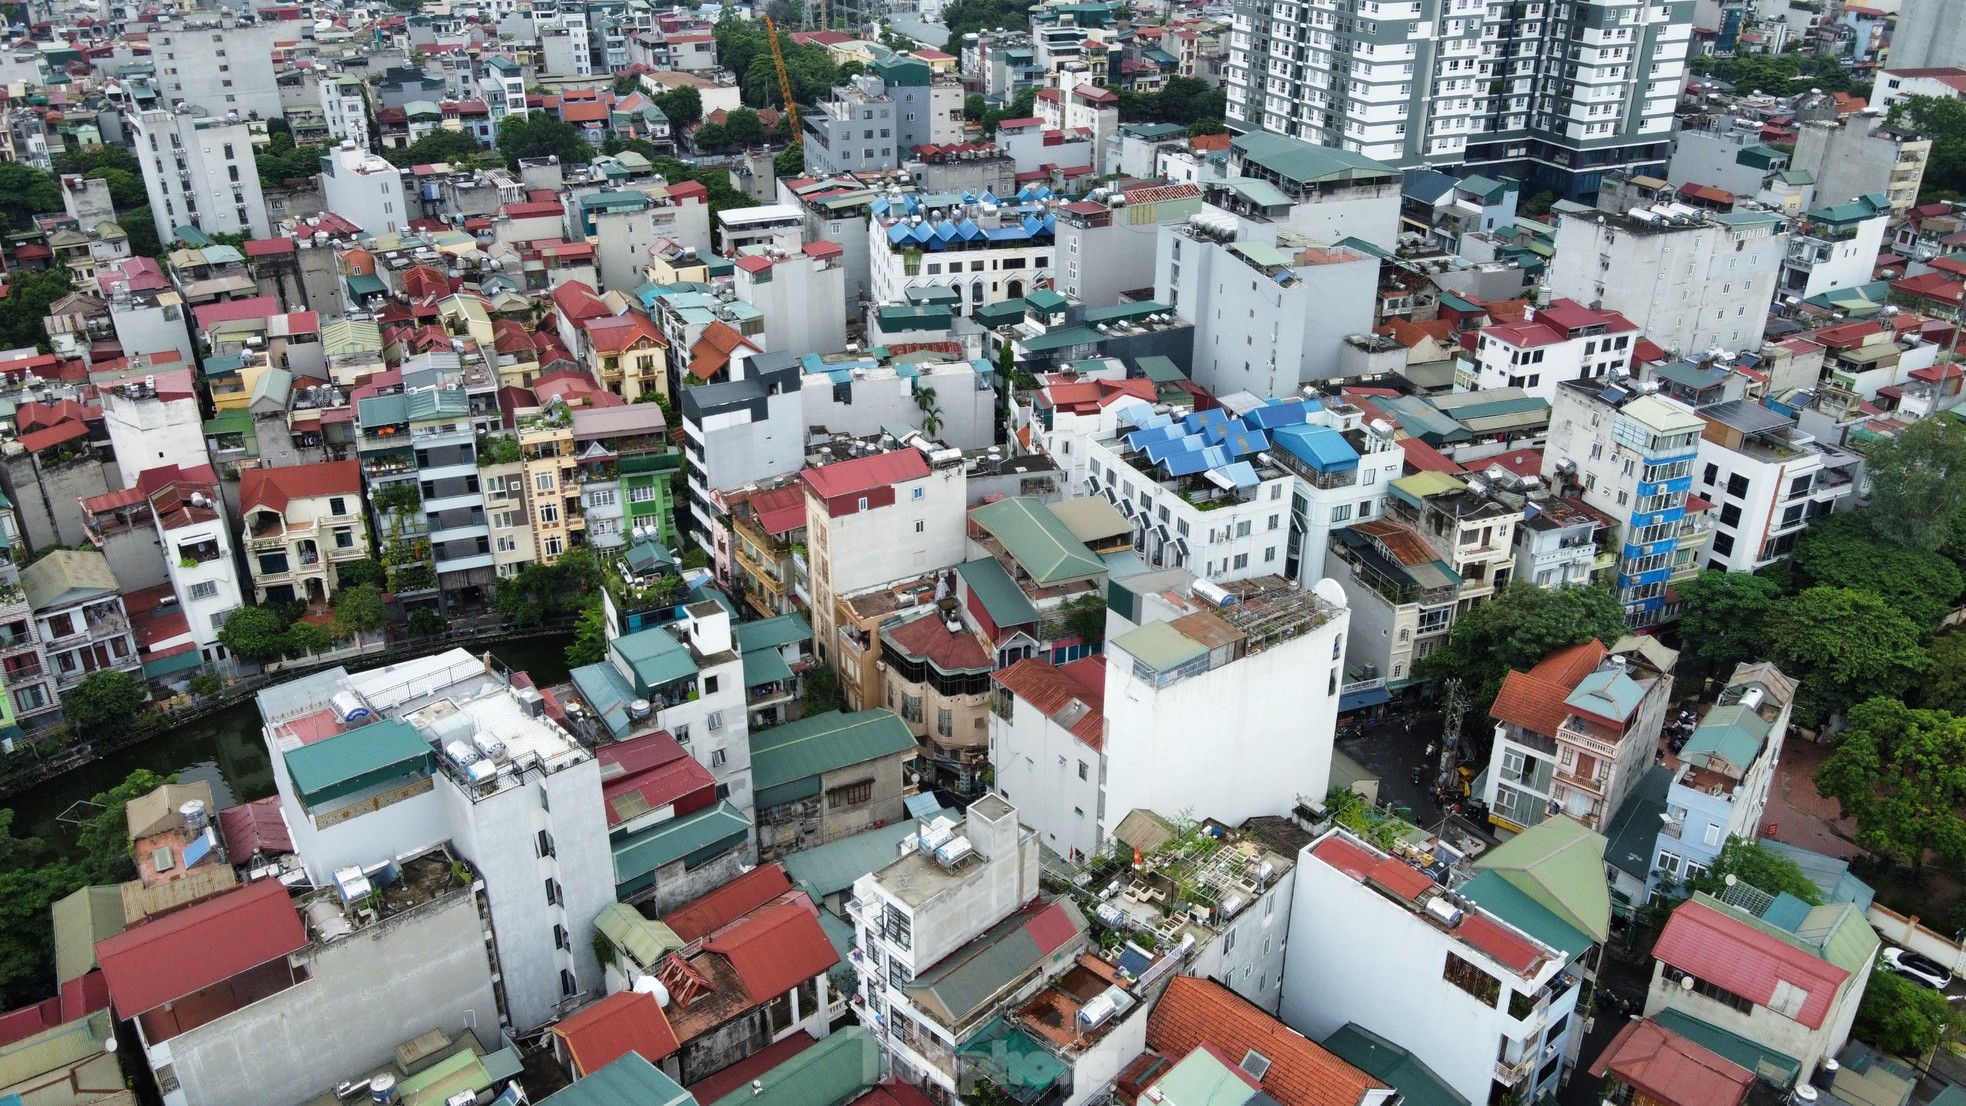 'Thủ phủ' chung cư mini gần nơi xảy ra vụ cháy kinh hoàng ở Hà Nội - Ảnh 13.